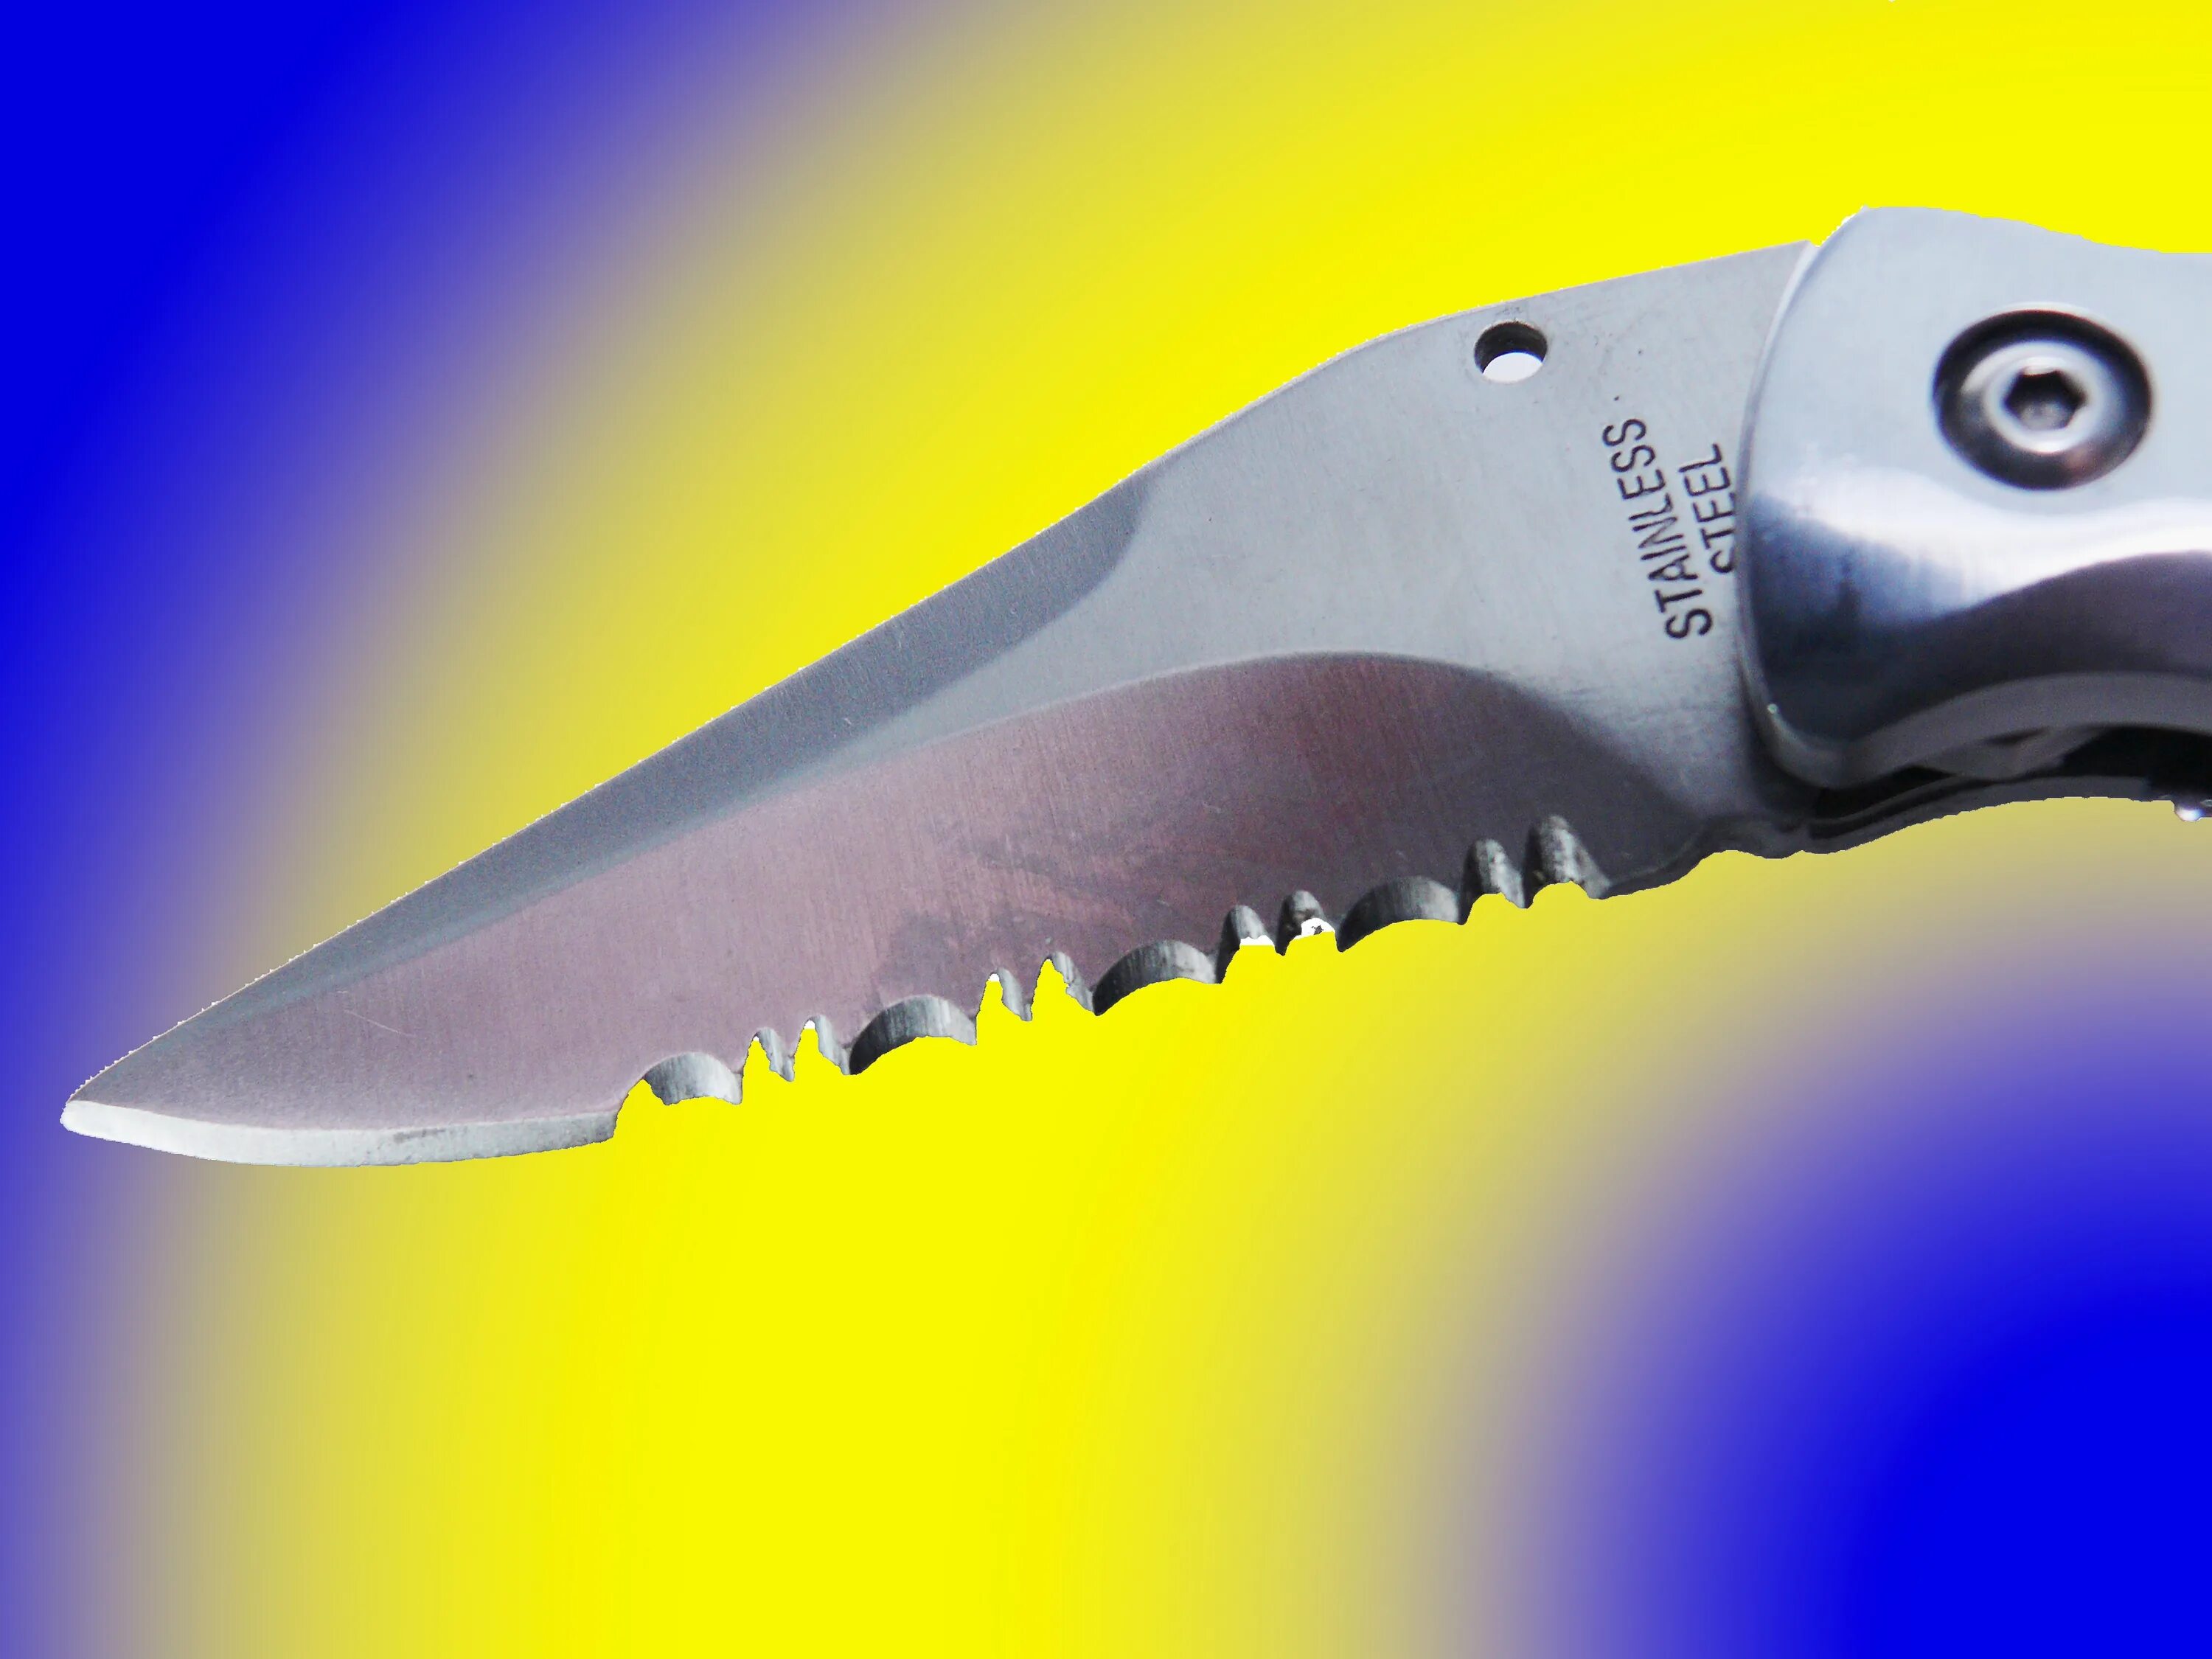 Нож Knife Cut 480.1.20. "Клинок", "лезвие", "бритва" (1995). Острый нож. Острое лезвие ножа. Острие острый